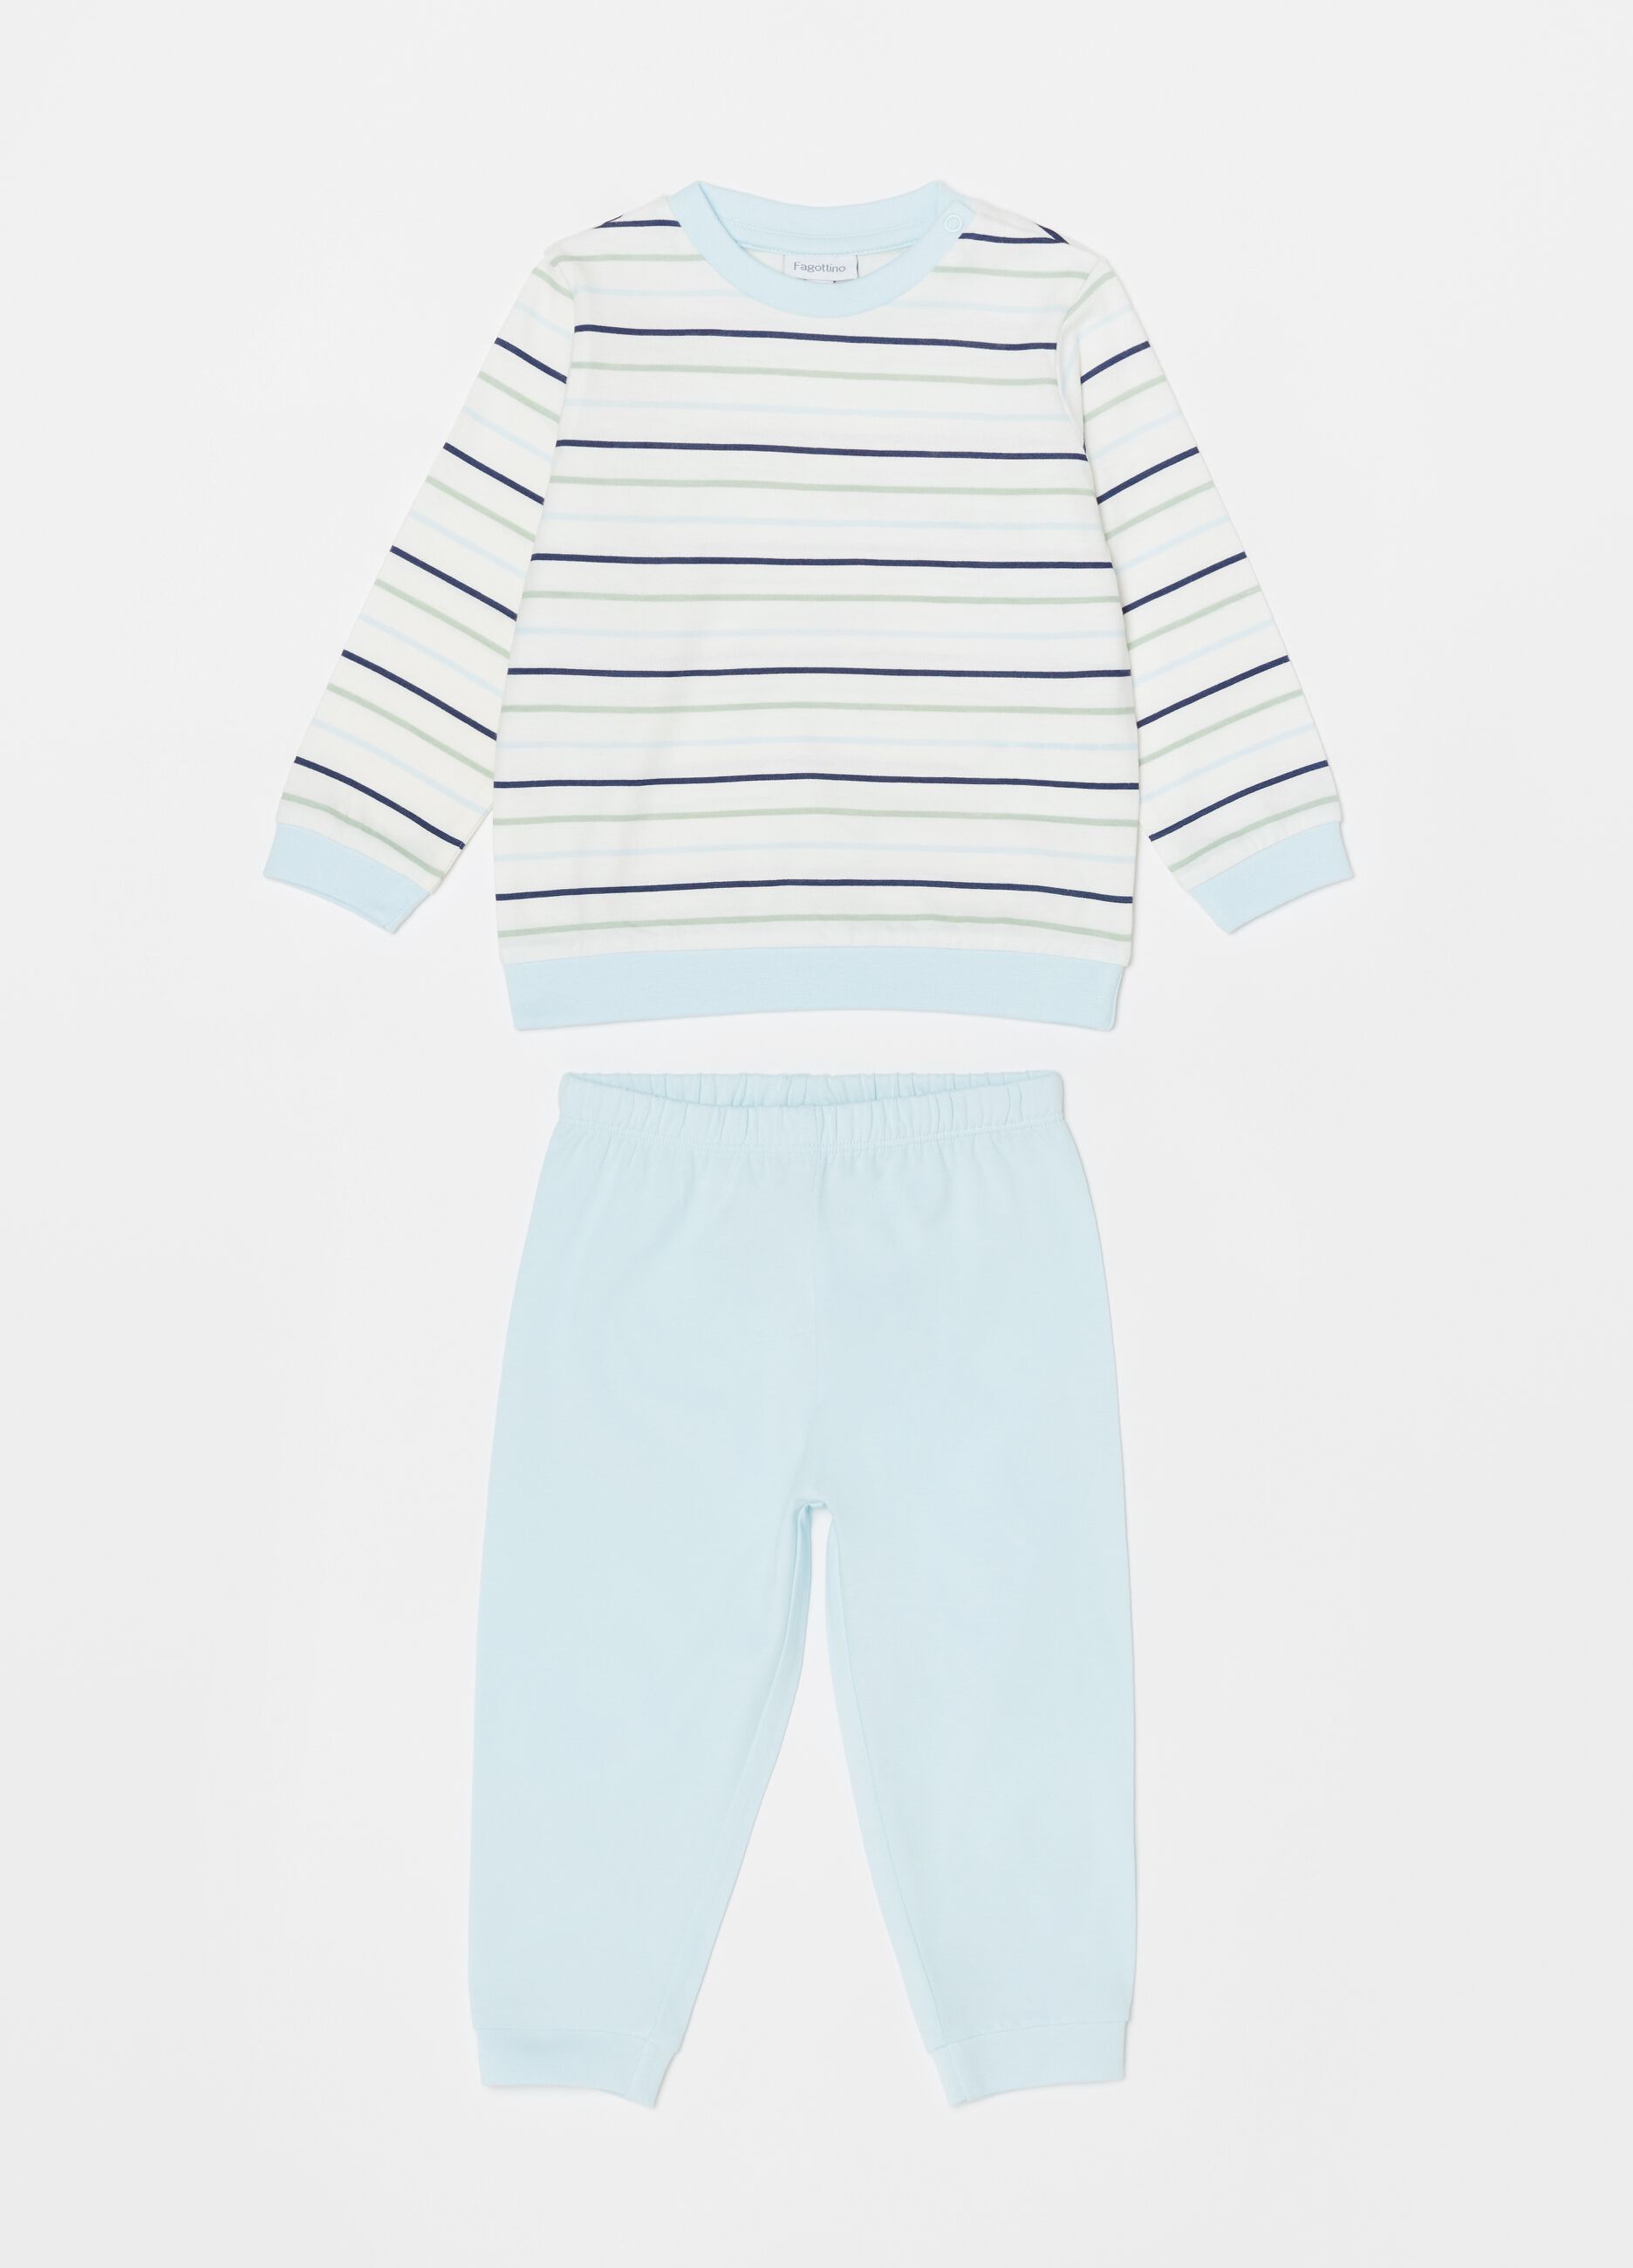 Striped pyjamas in 100% cotton